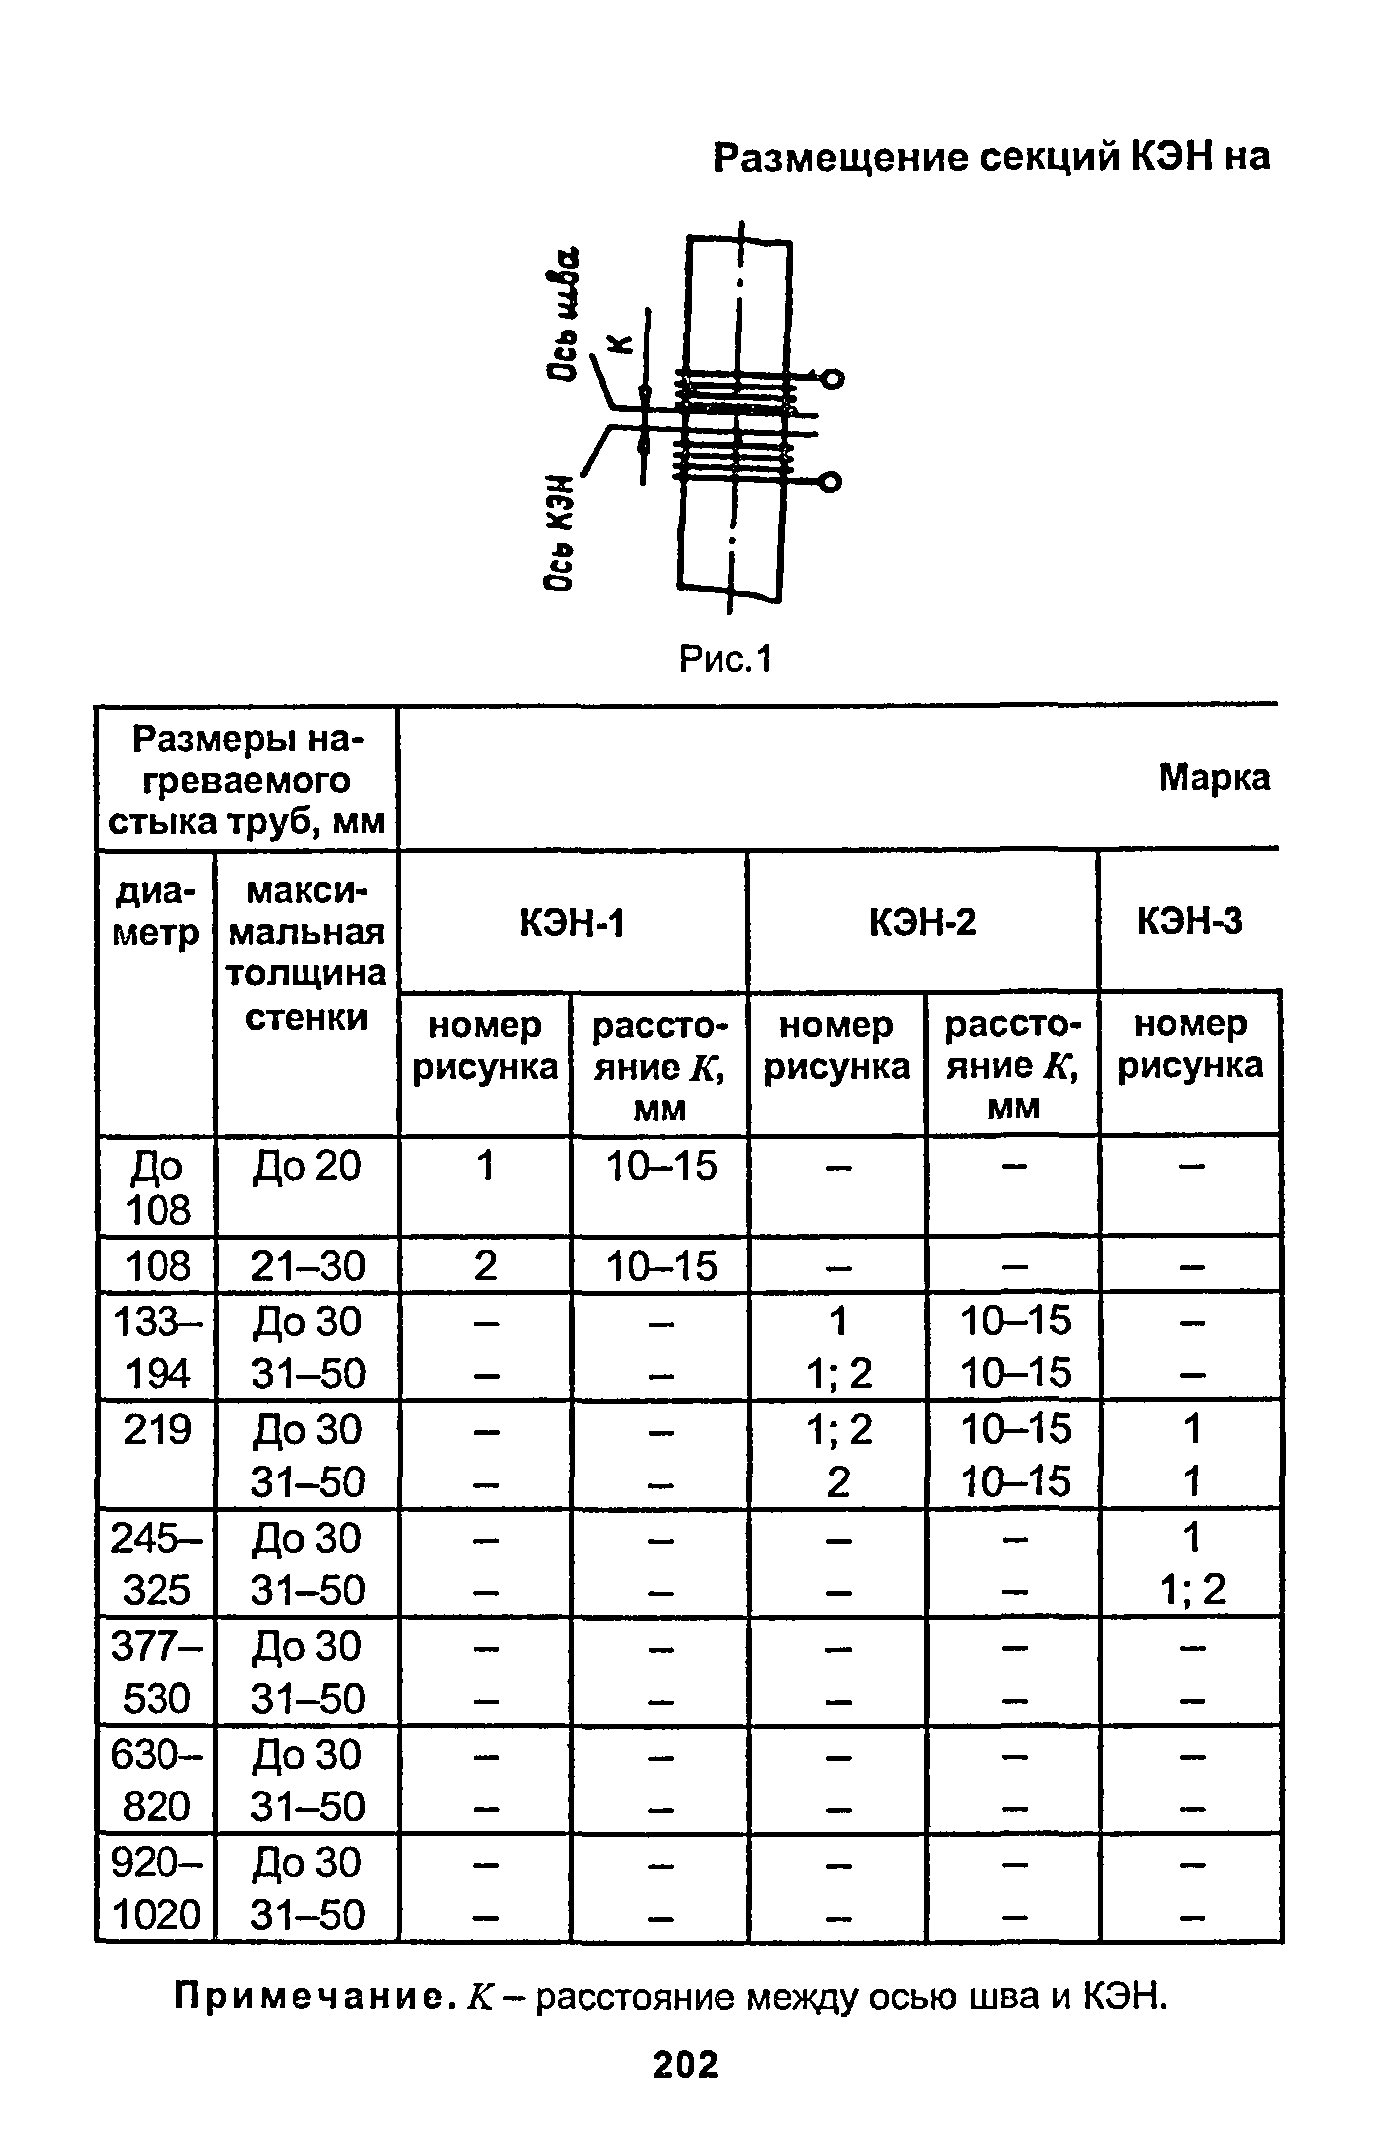 РД 153-34.1-003-01